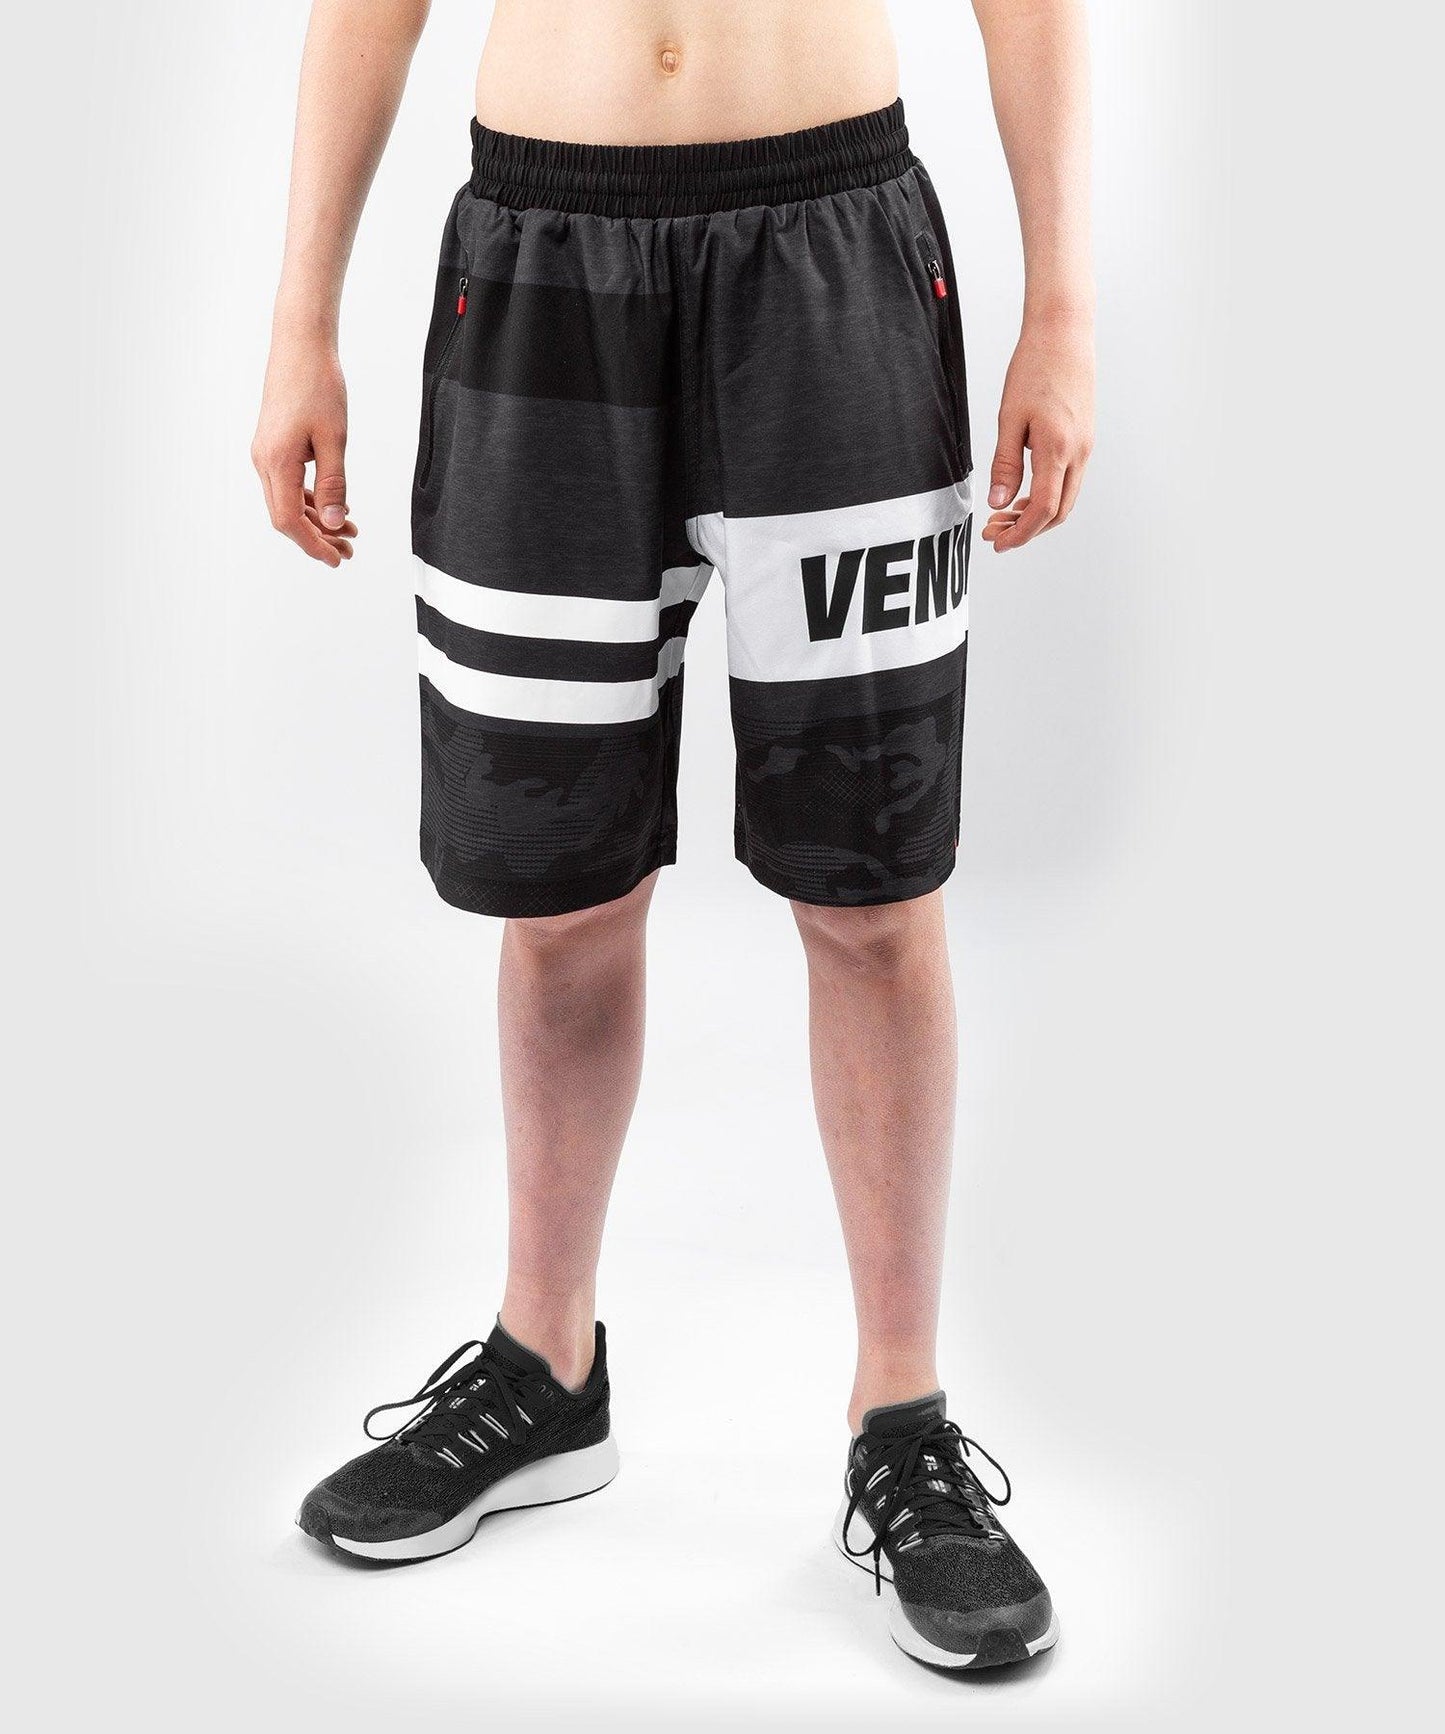 Pantalones cortos de entrenamiento Vernum Bandit - para niños - Negro/Gris